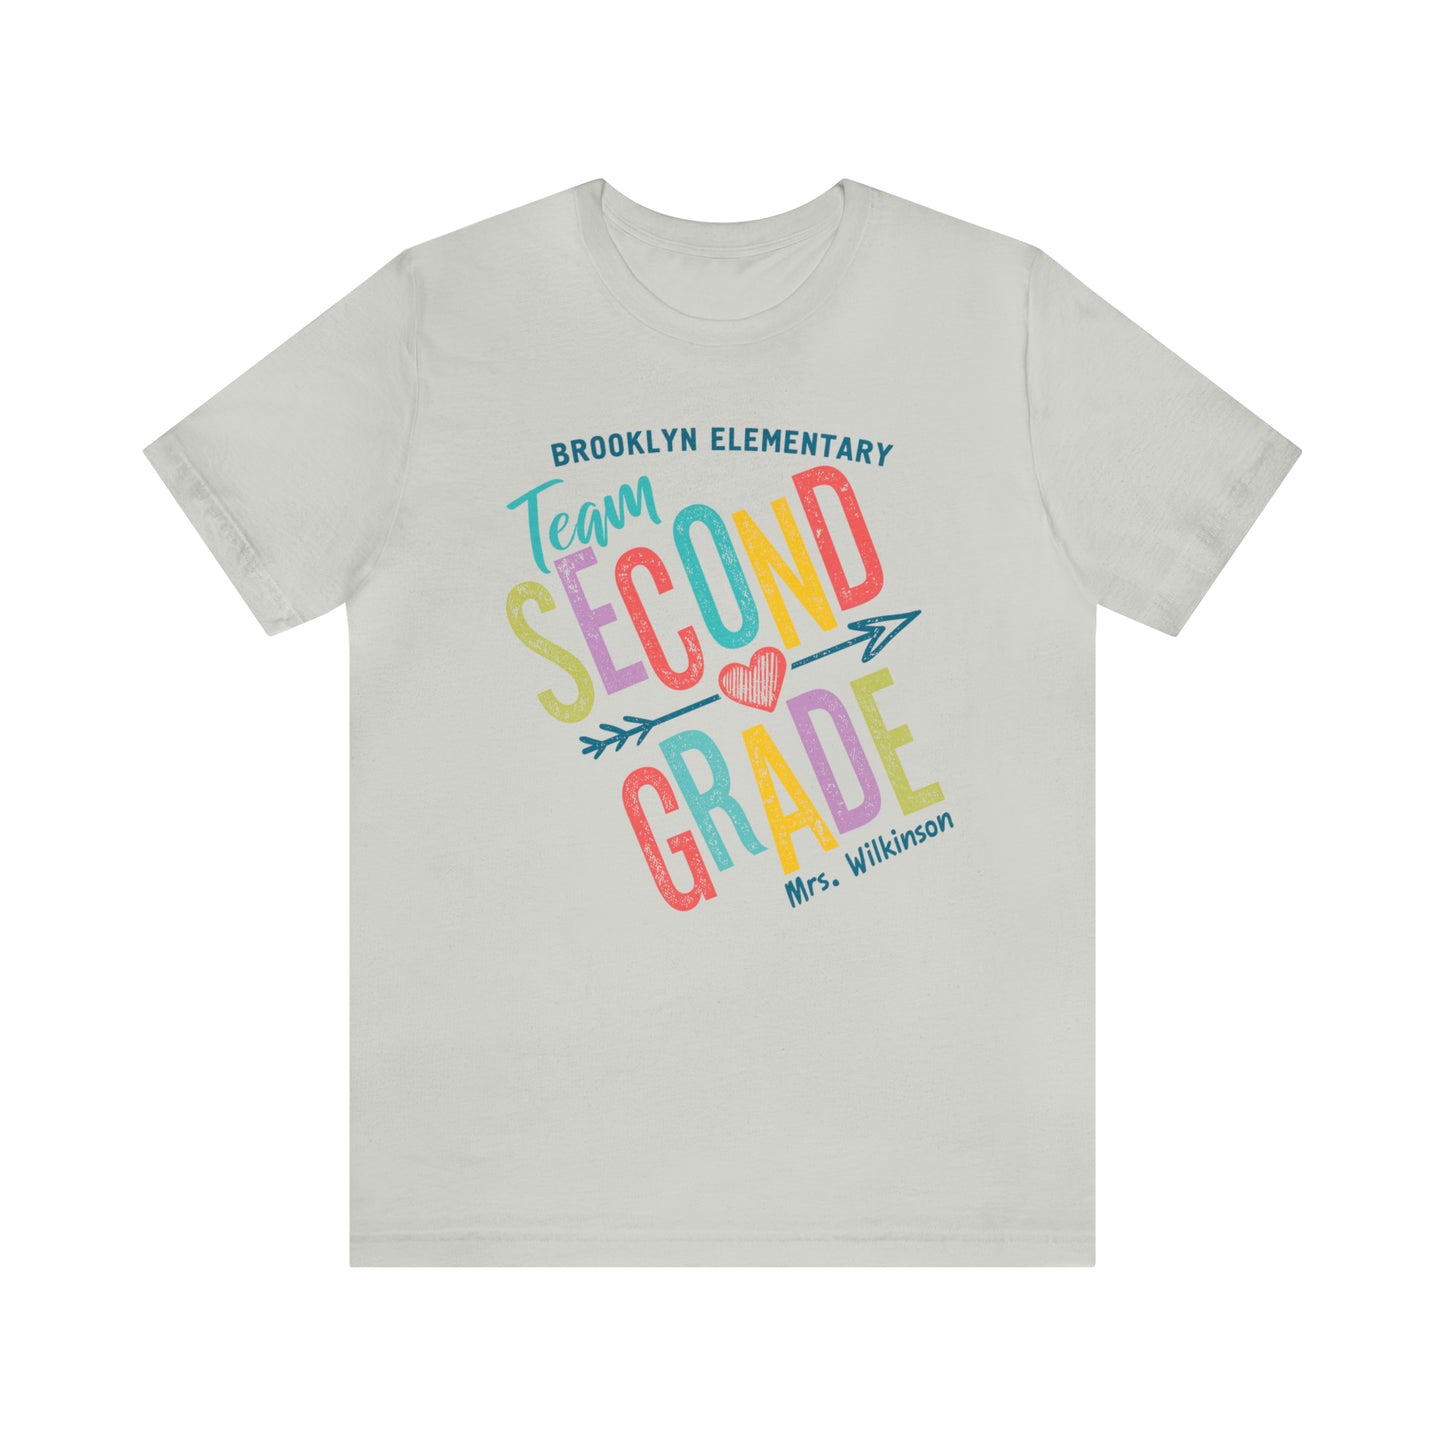 Second Grade Teacher Shirt, 2nd Grade Teacher Tee, Back to School, Personalized Teacher and School Name